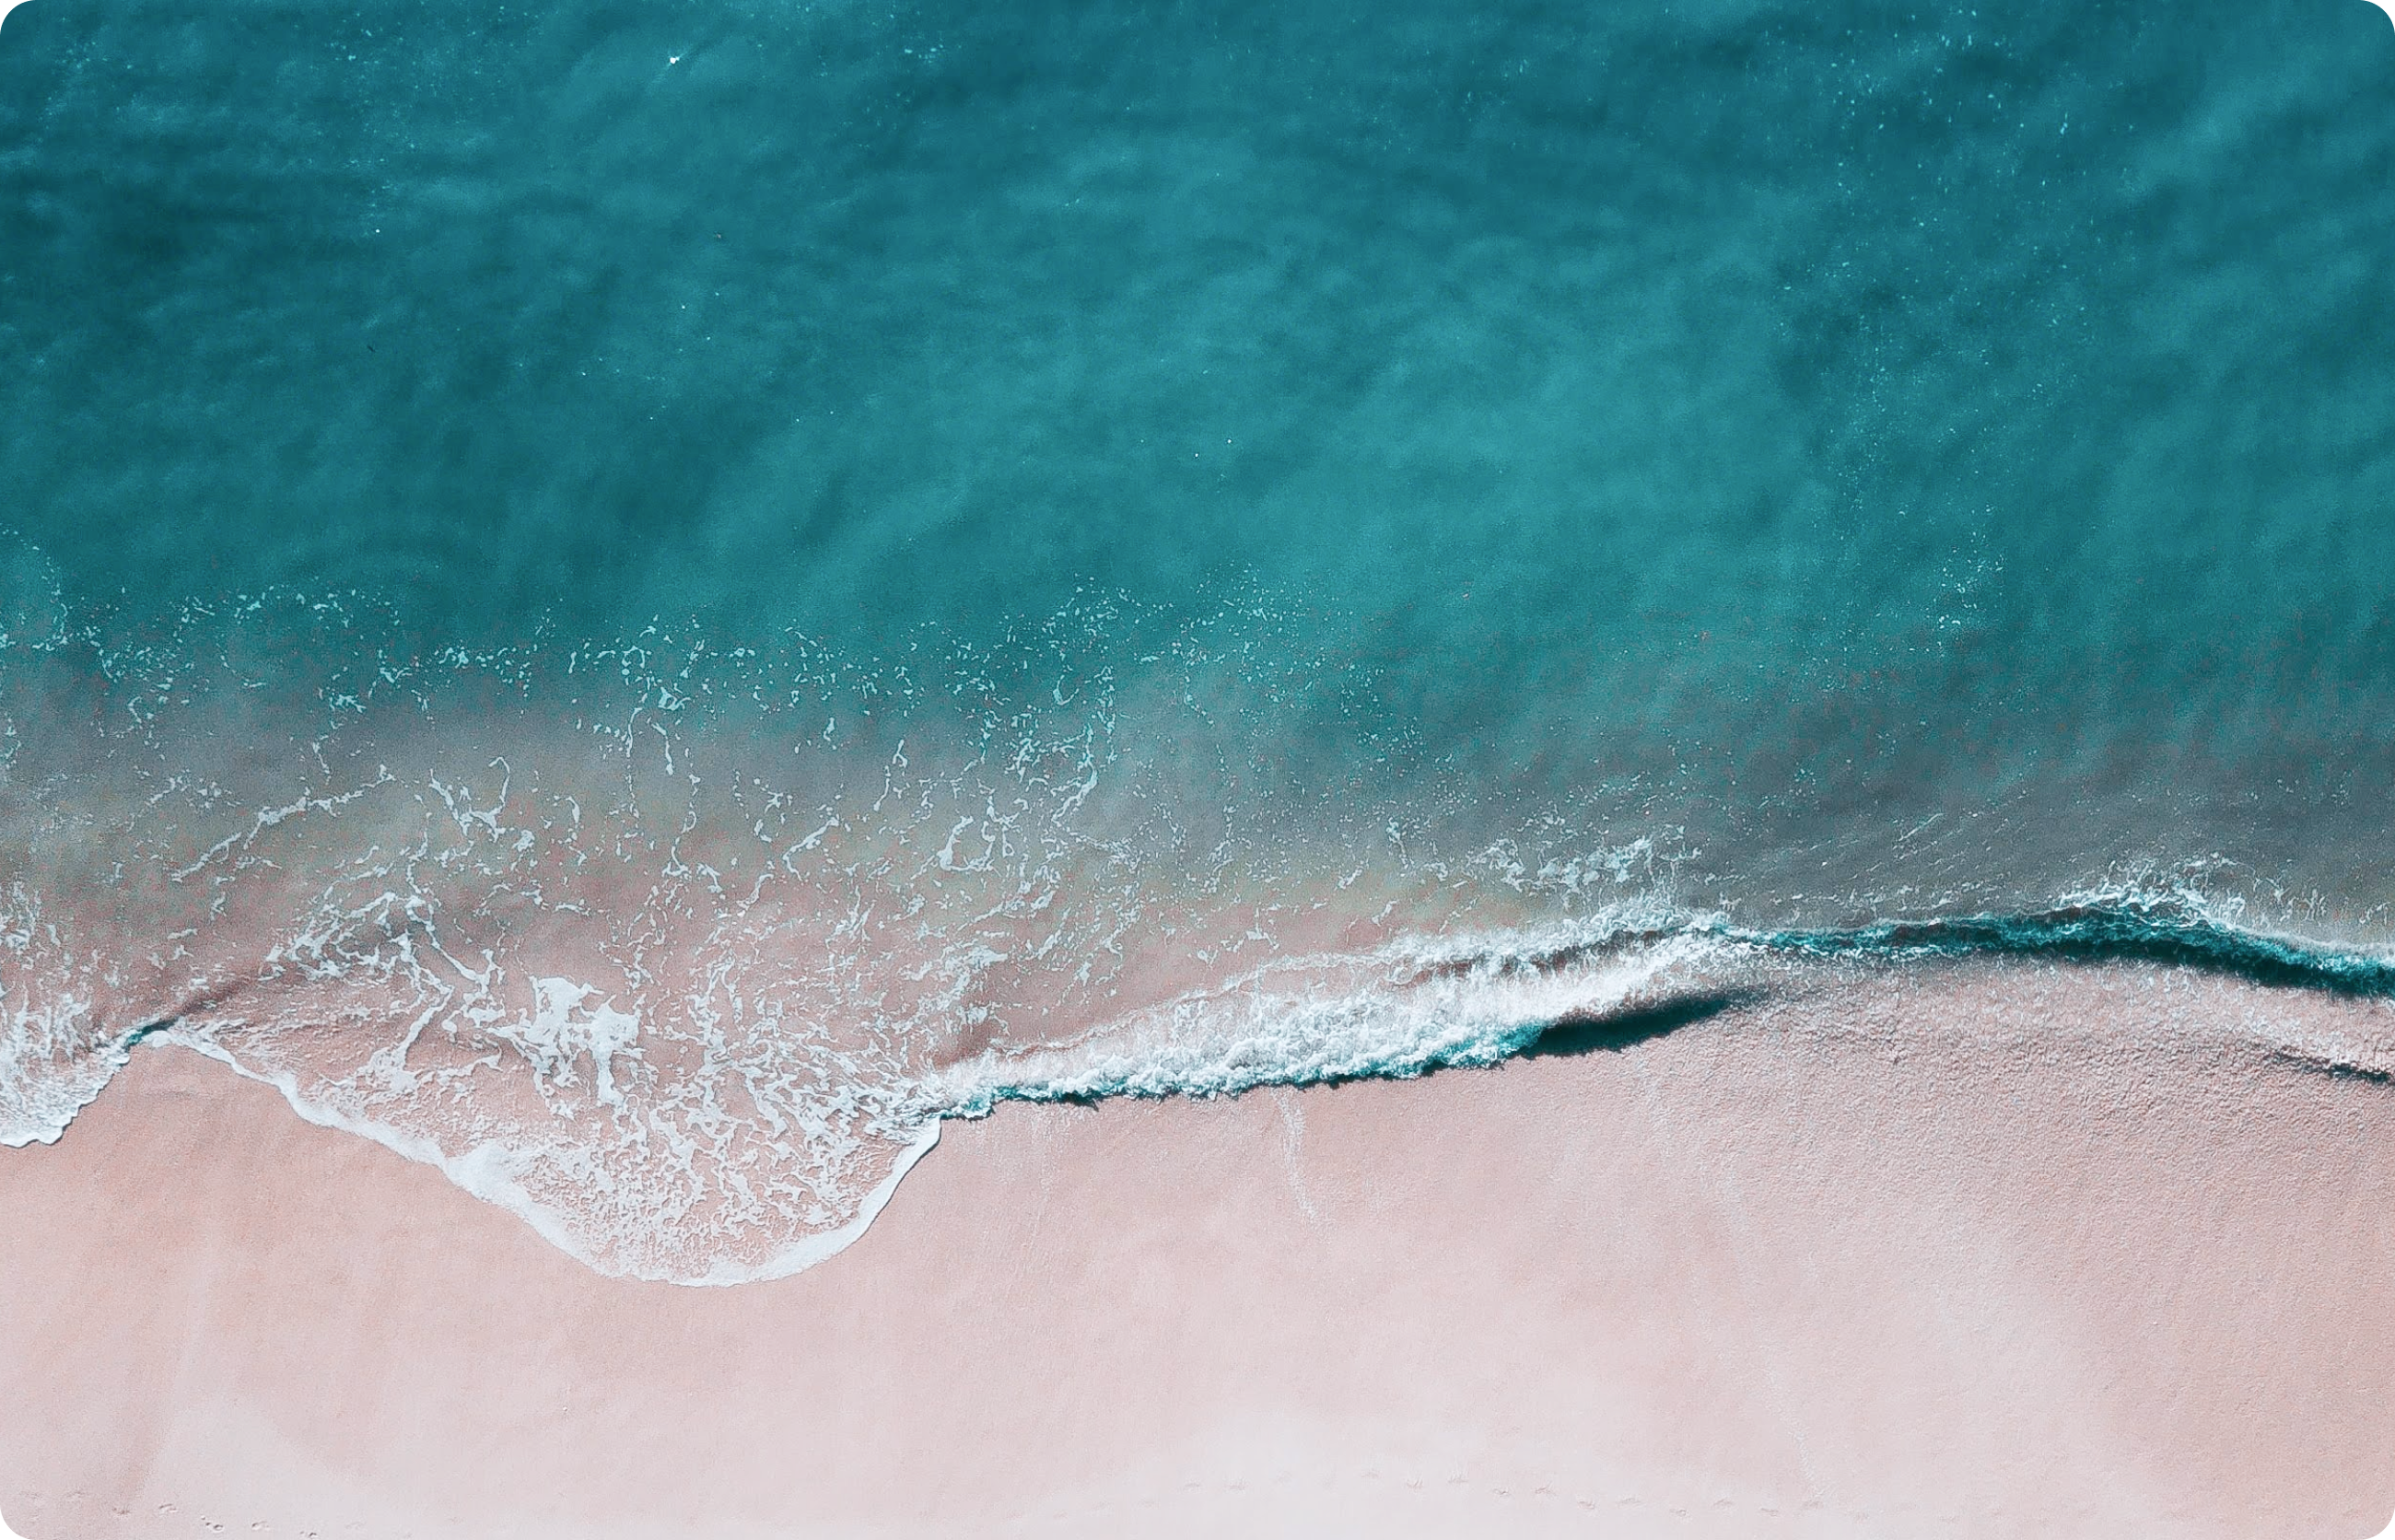 空撮で捉えられた海岸線で、透き通る青い海が砂浜に波打ち寄せている様子